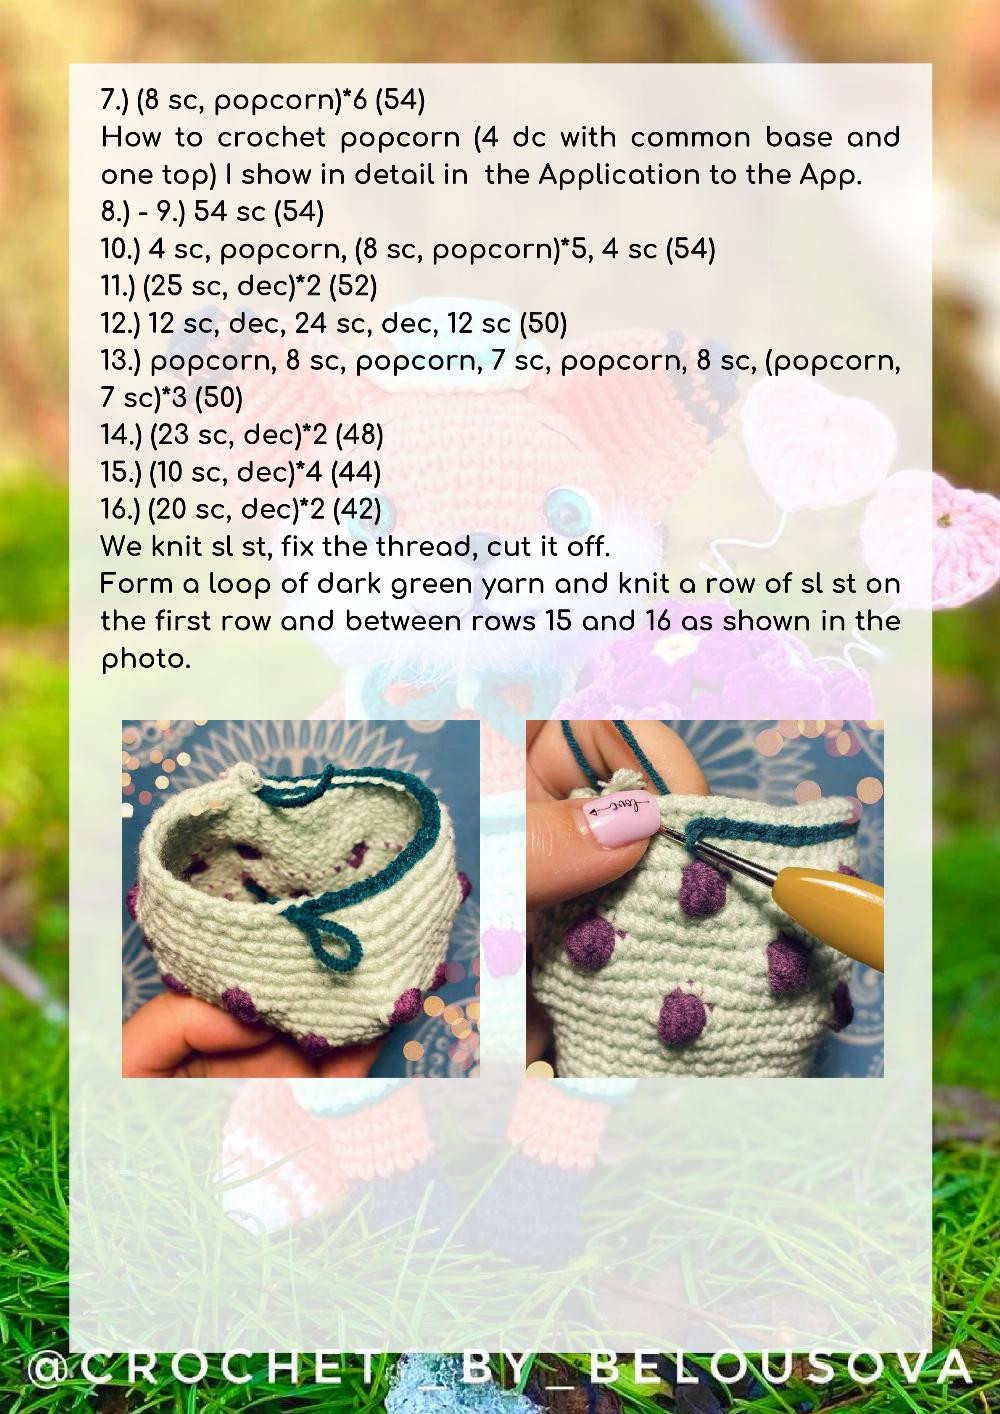 Crochet pattern "Fox Mr. Darcy"